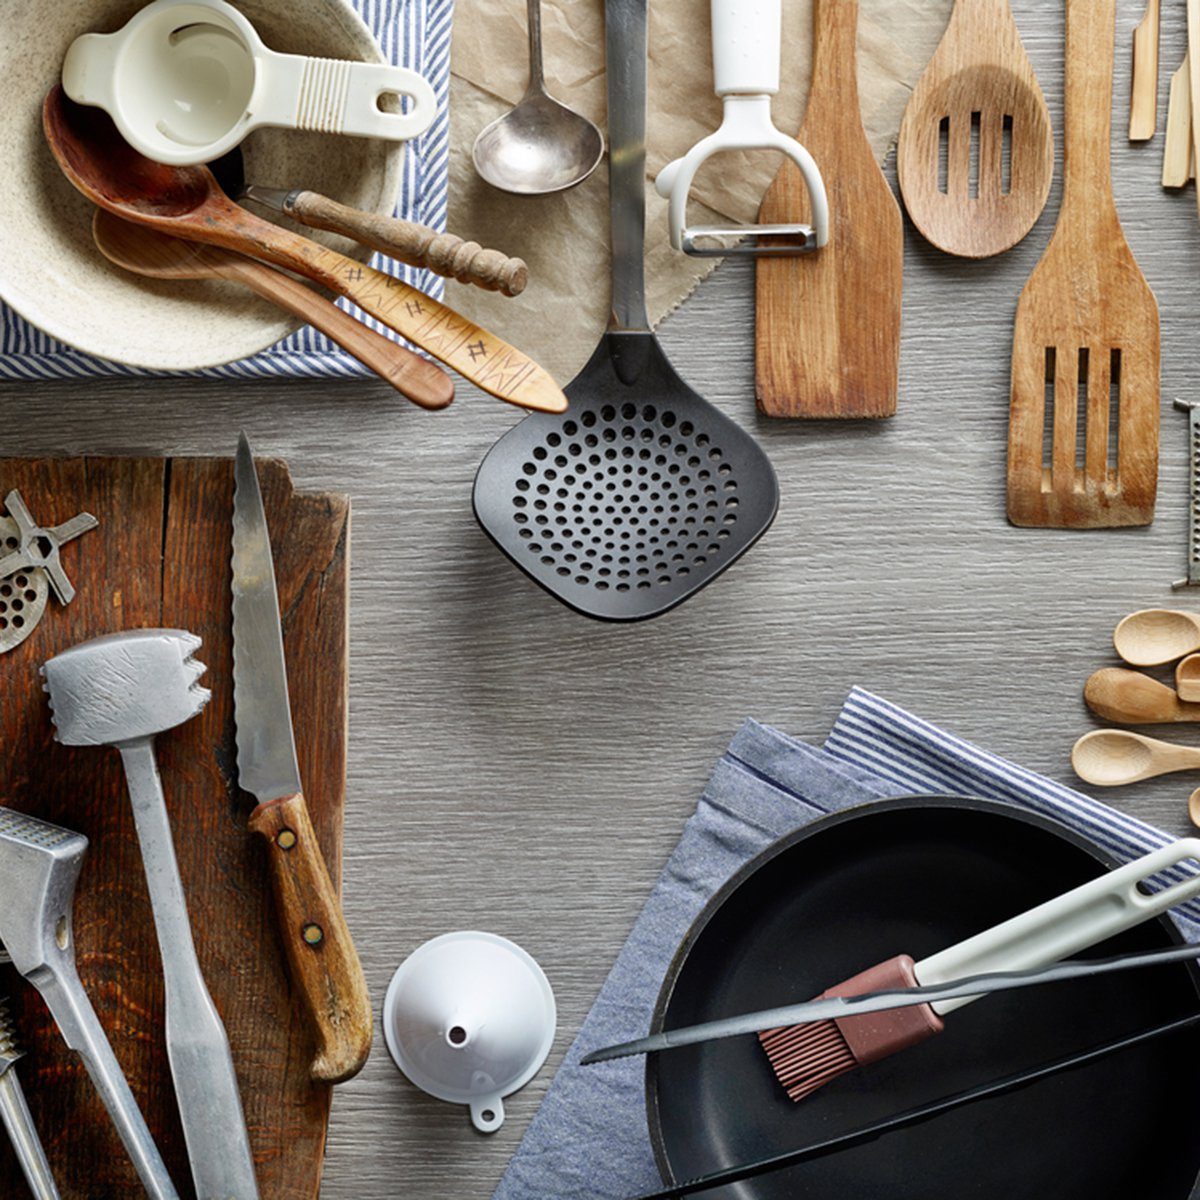 Various kitchen utensils on wooden table